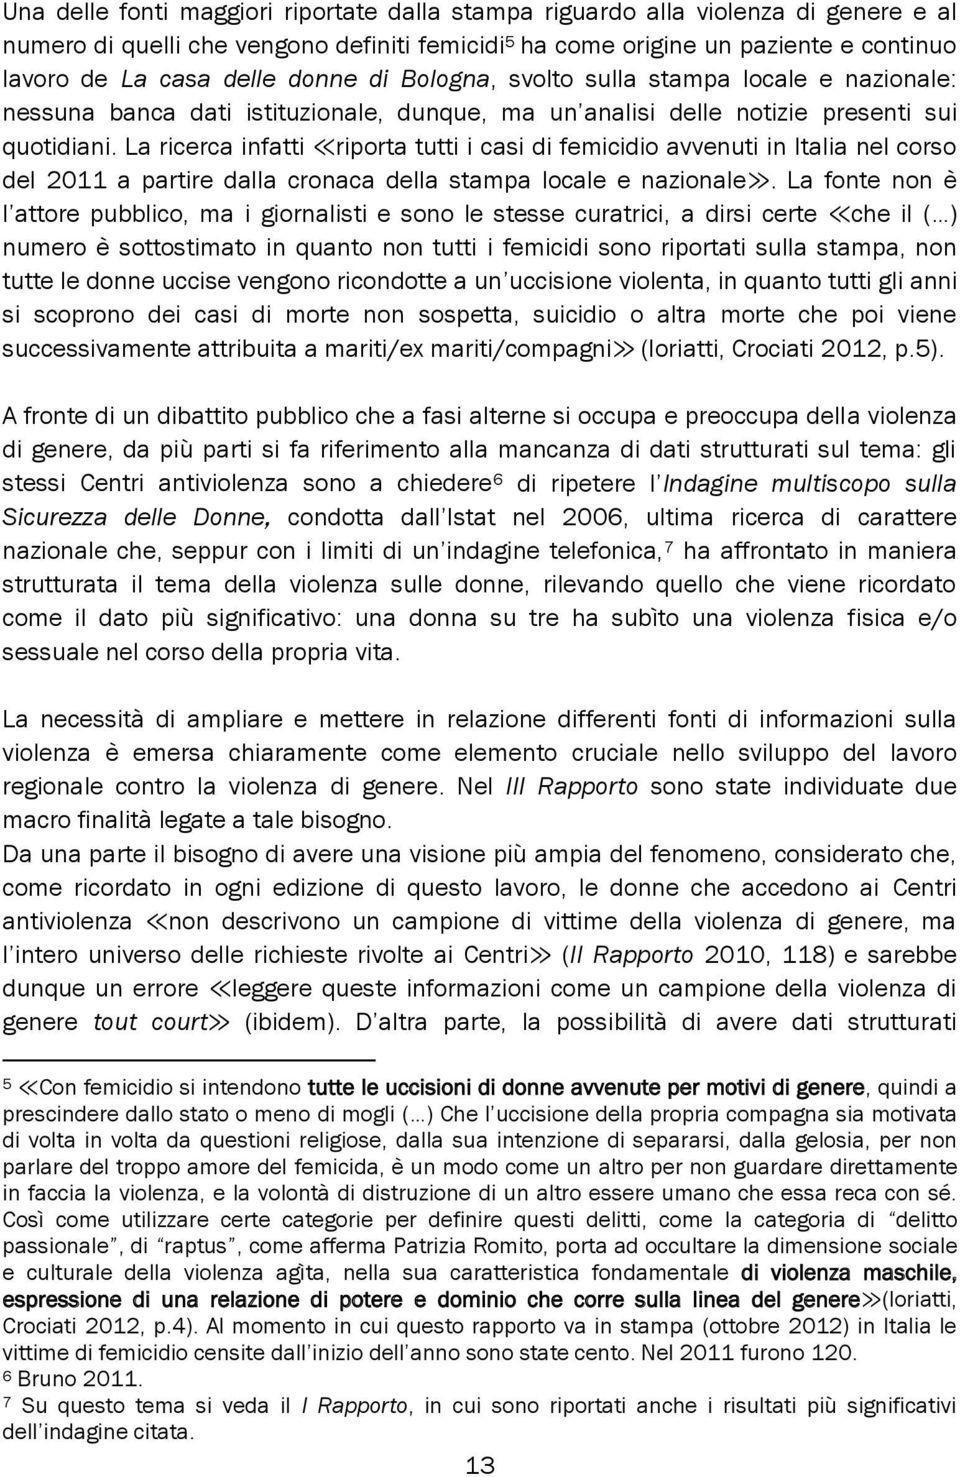 La ricerca infatti riporta tutti i casi di femicidio avvenuti in Italia nel corso del 2011 a partire dalla cronaca della stampa locale e nazionale.